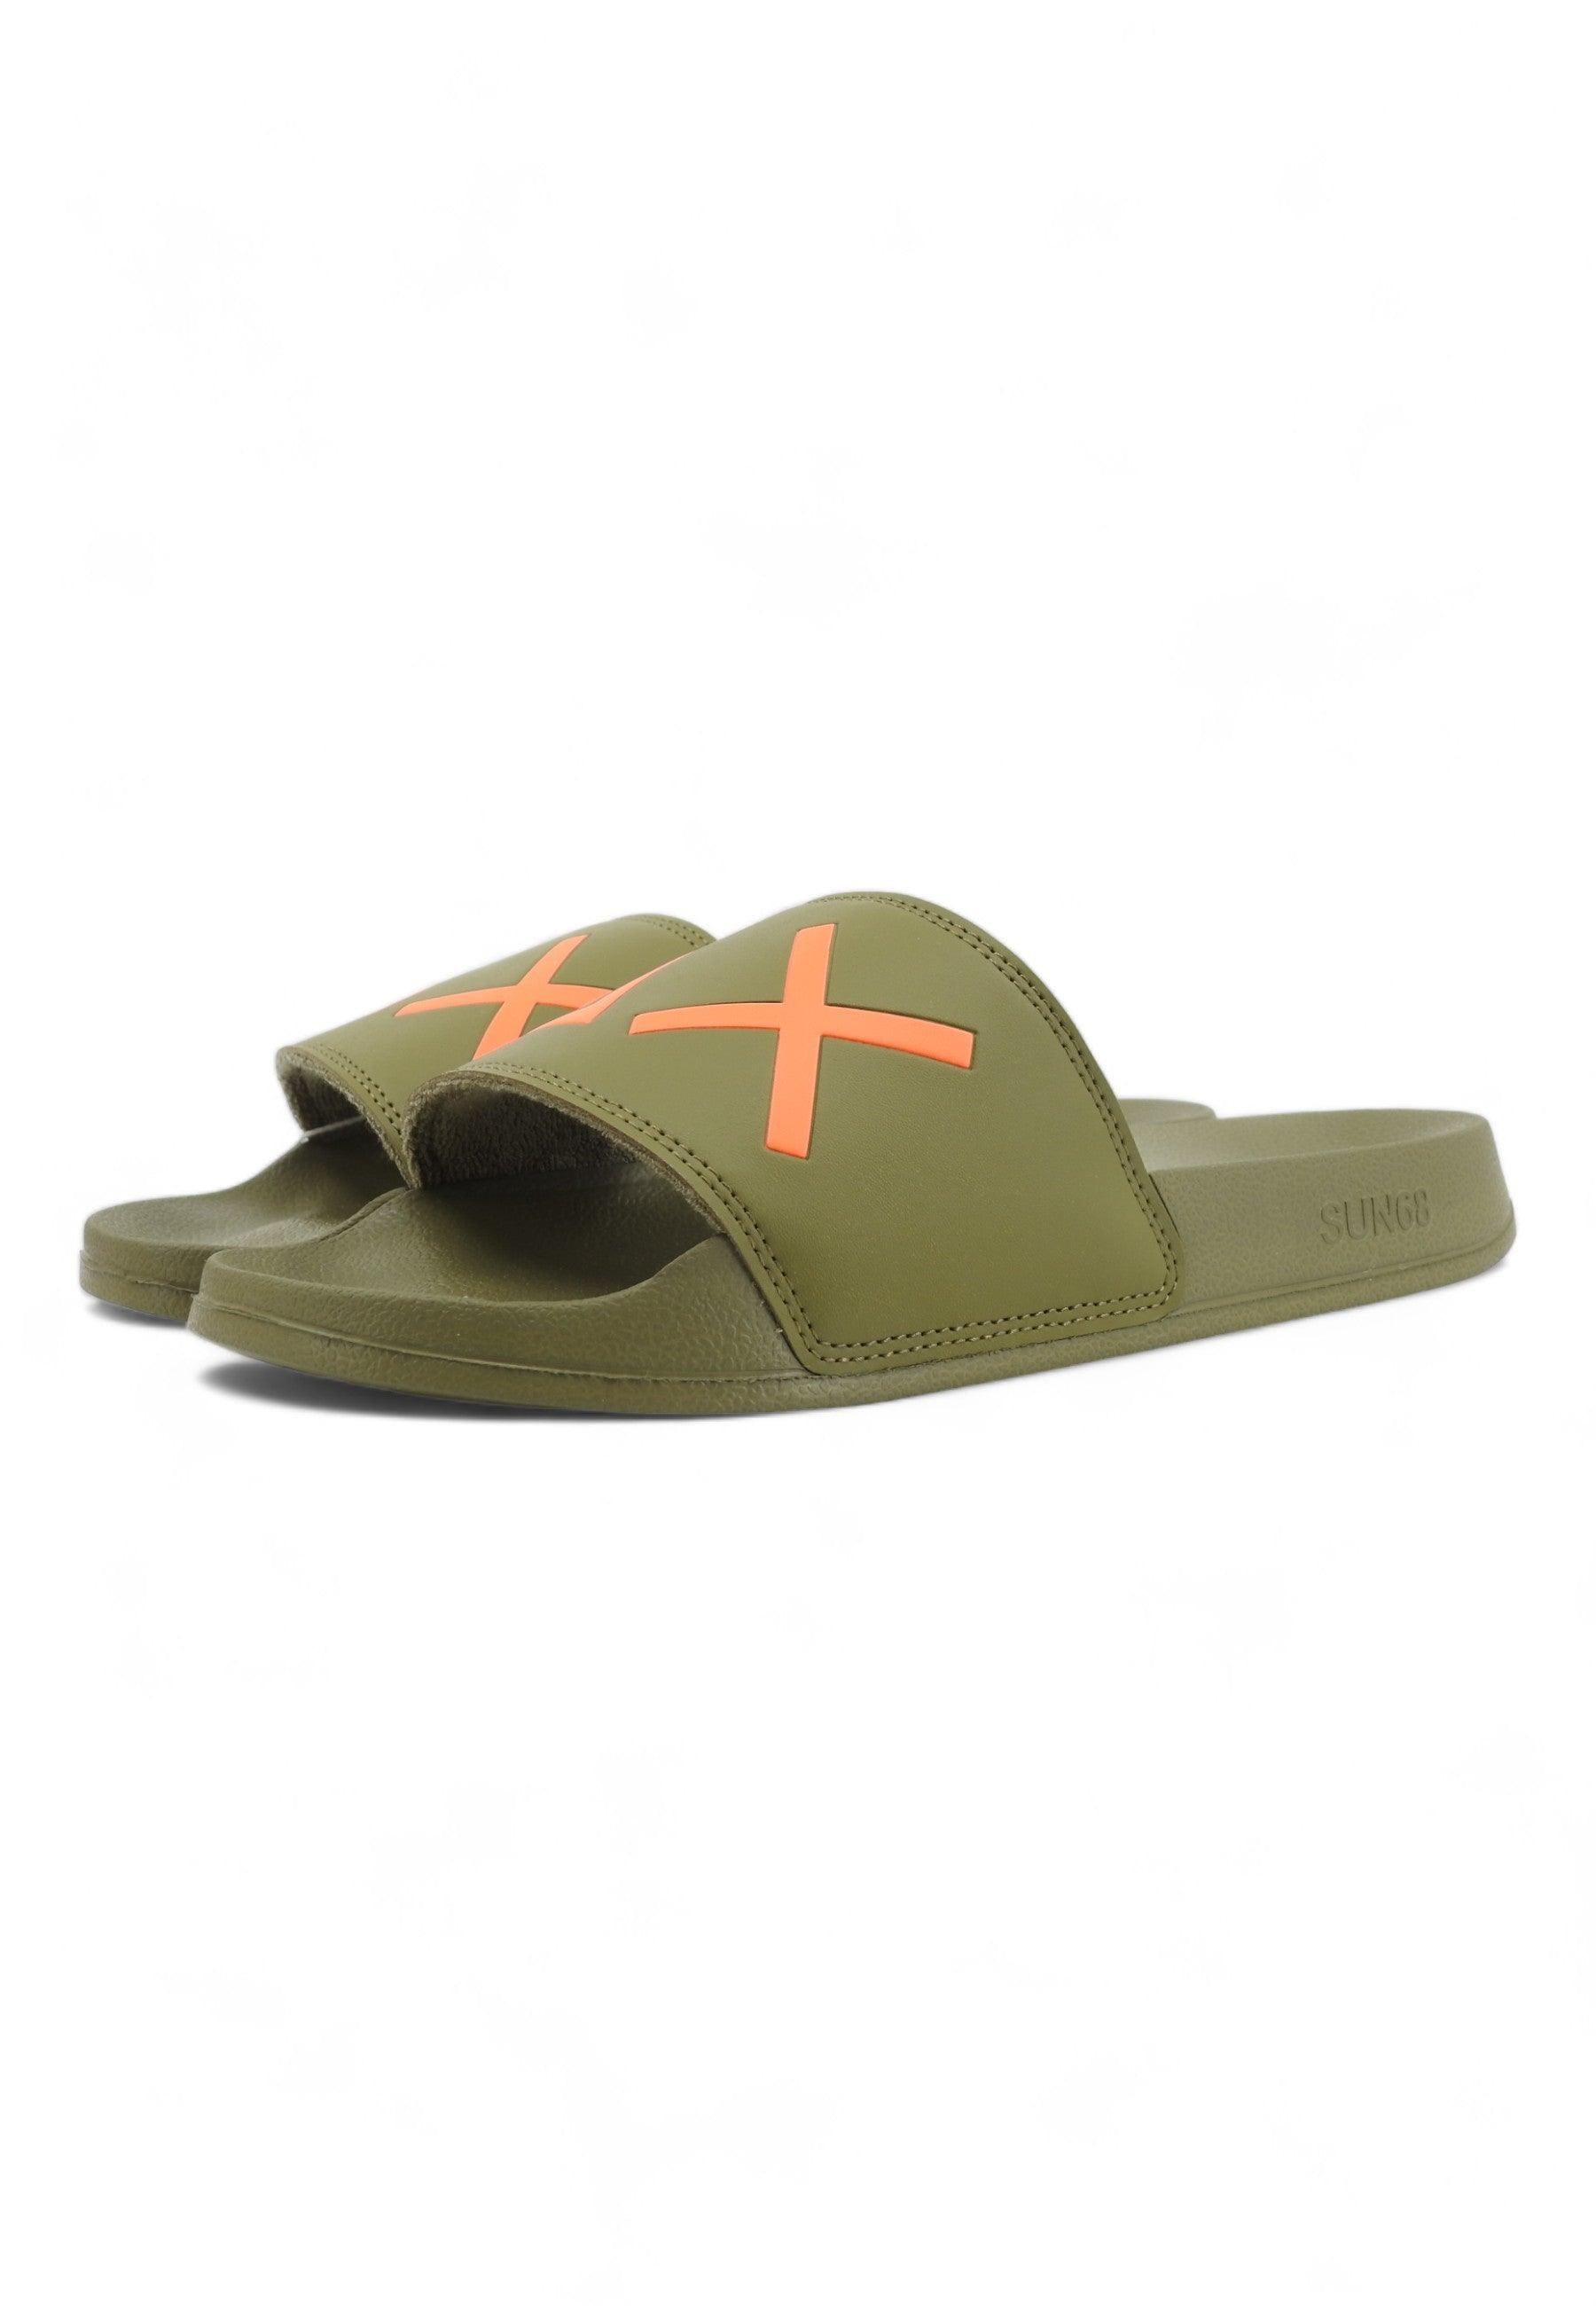 SUN68 Slippers Ciabatta Uomo Militare Verde X34103 - Sandrini Calzature e Abbigliamento